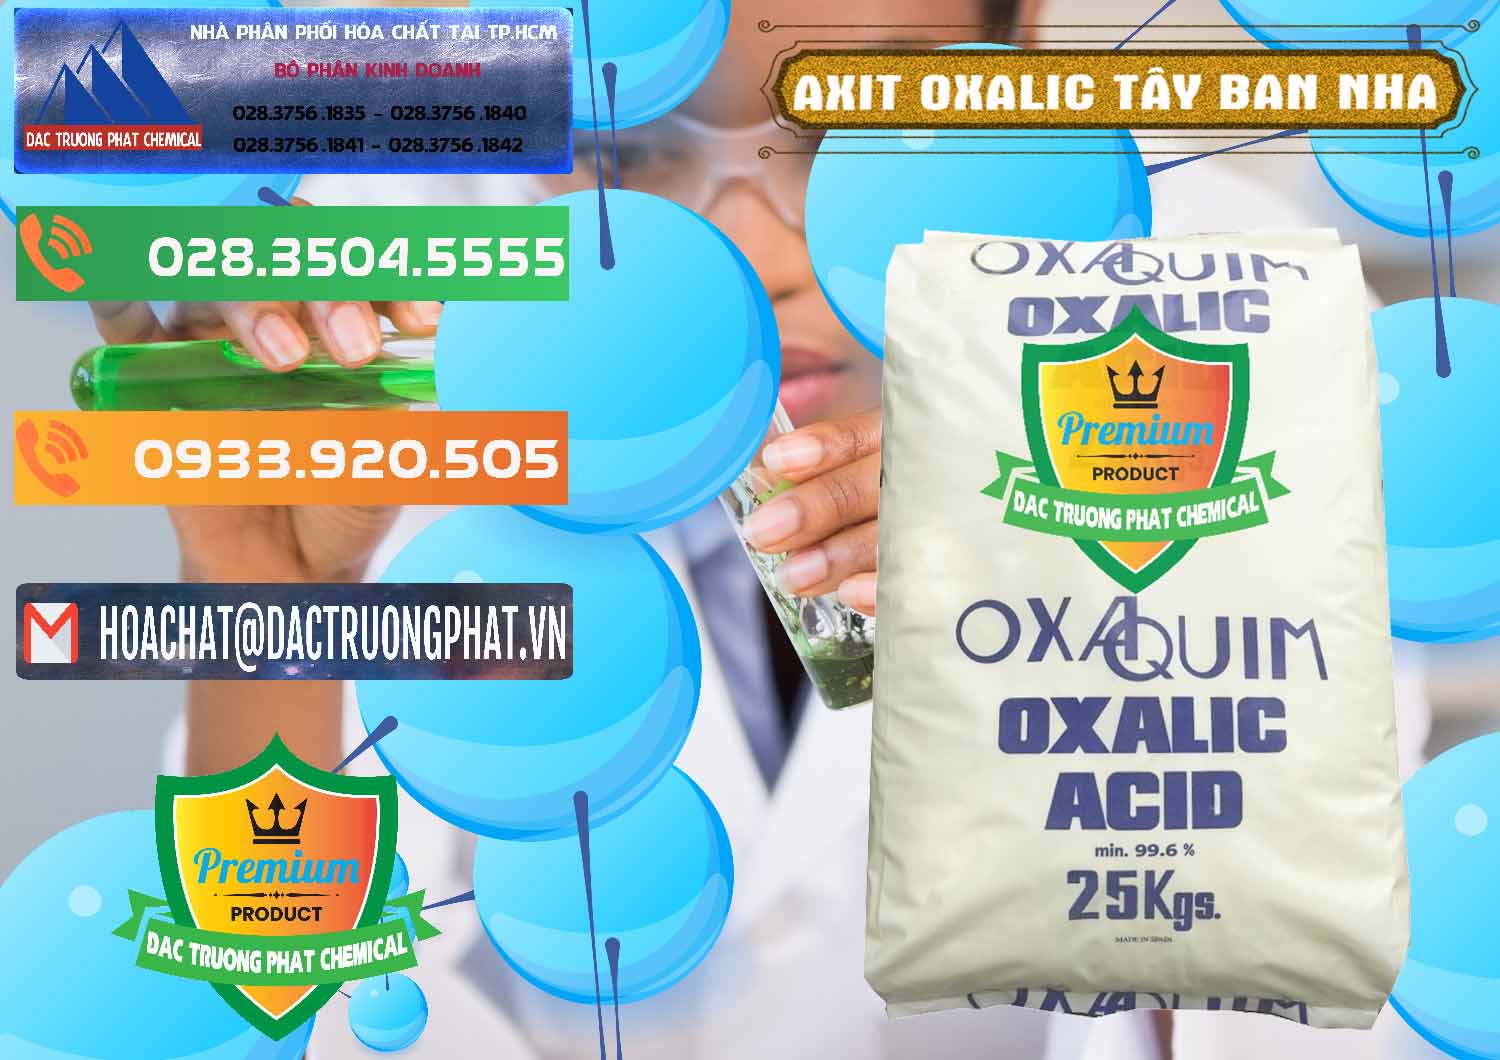 Cty chuyên bán ( cung ứng ) Acid Oxalic – Axit Oxalic 99.6% Tây Ban Nha Spain - 0269 - Đơn vị chuyên cung cấp và bán hóa chất tại TP.HCM - hoachatxulynuoc.com.vn